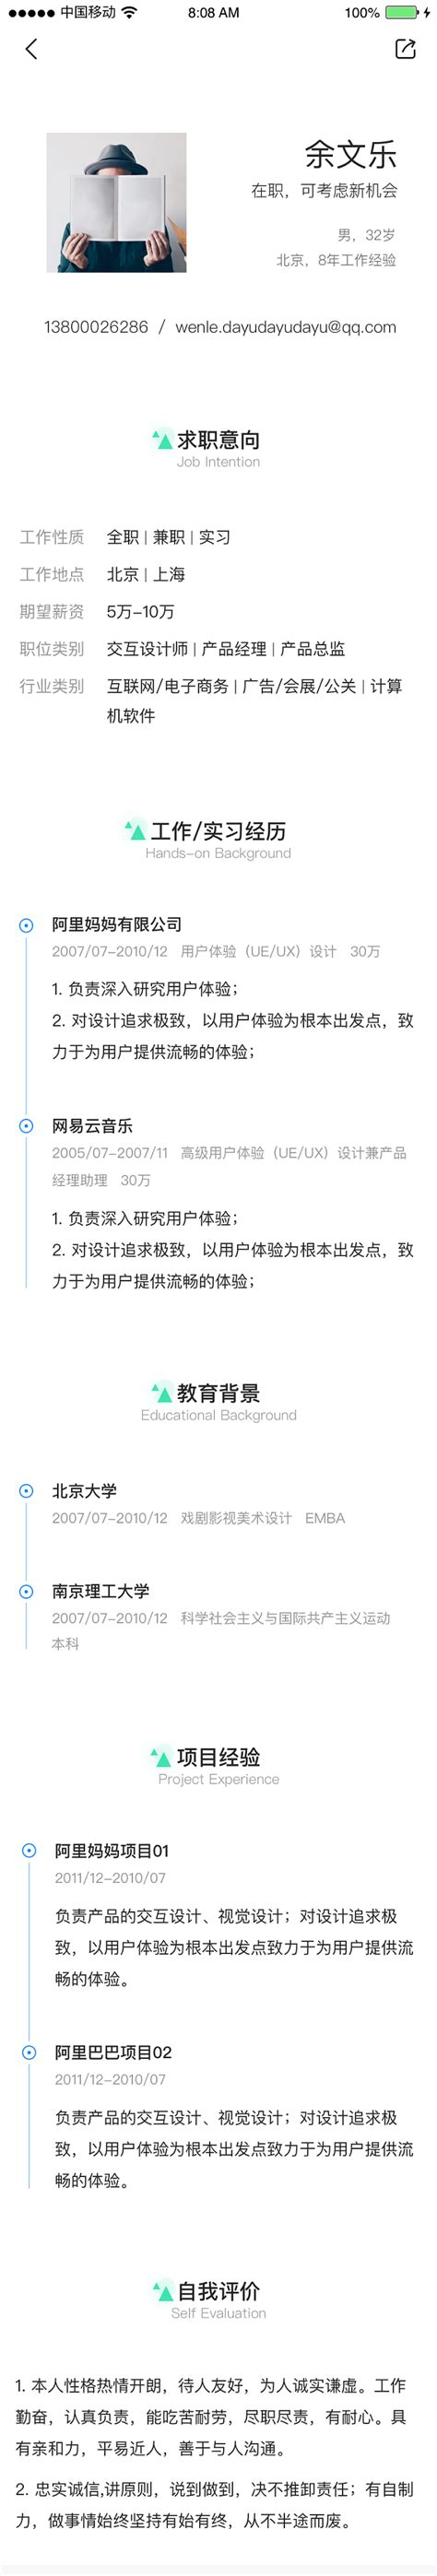 2021智联招聘v8.1.6老旧历史版本安装包官方免费下载_豌豆荚